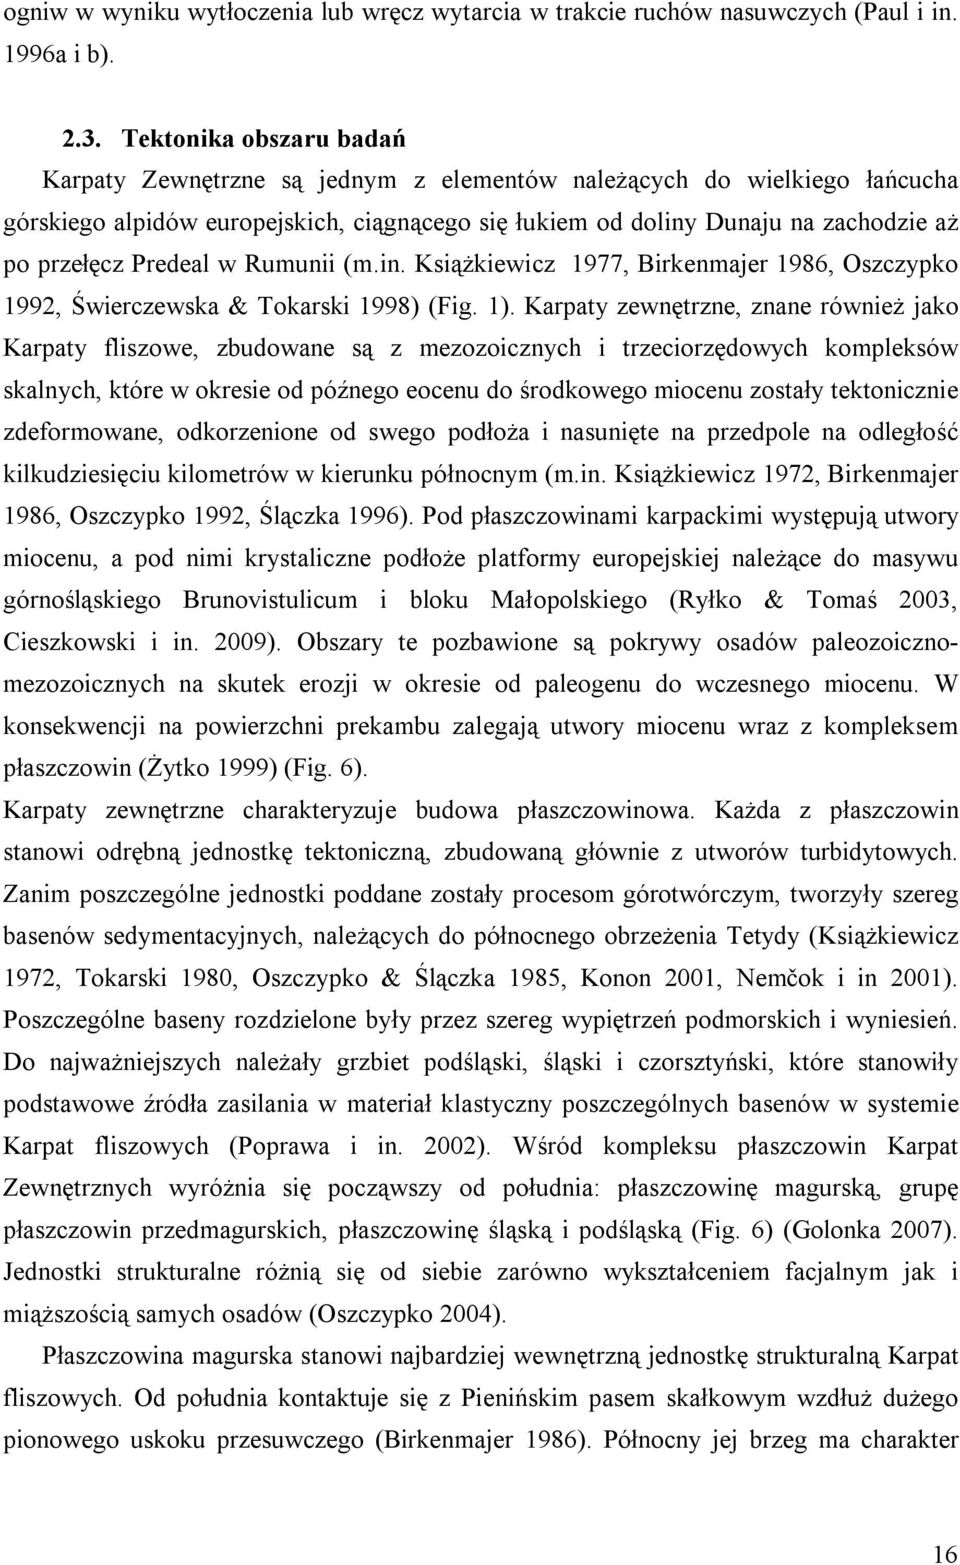 Predeal w Rumunii (m.in. Książkiewicz 1977, Birkenmajer 1986, Oszczypko 1992, Świerczewska & Tokarski 1998) (Fig. 1).